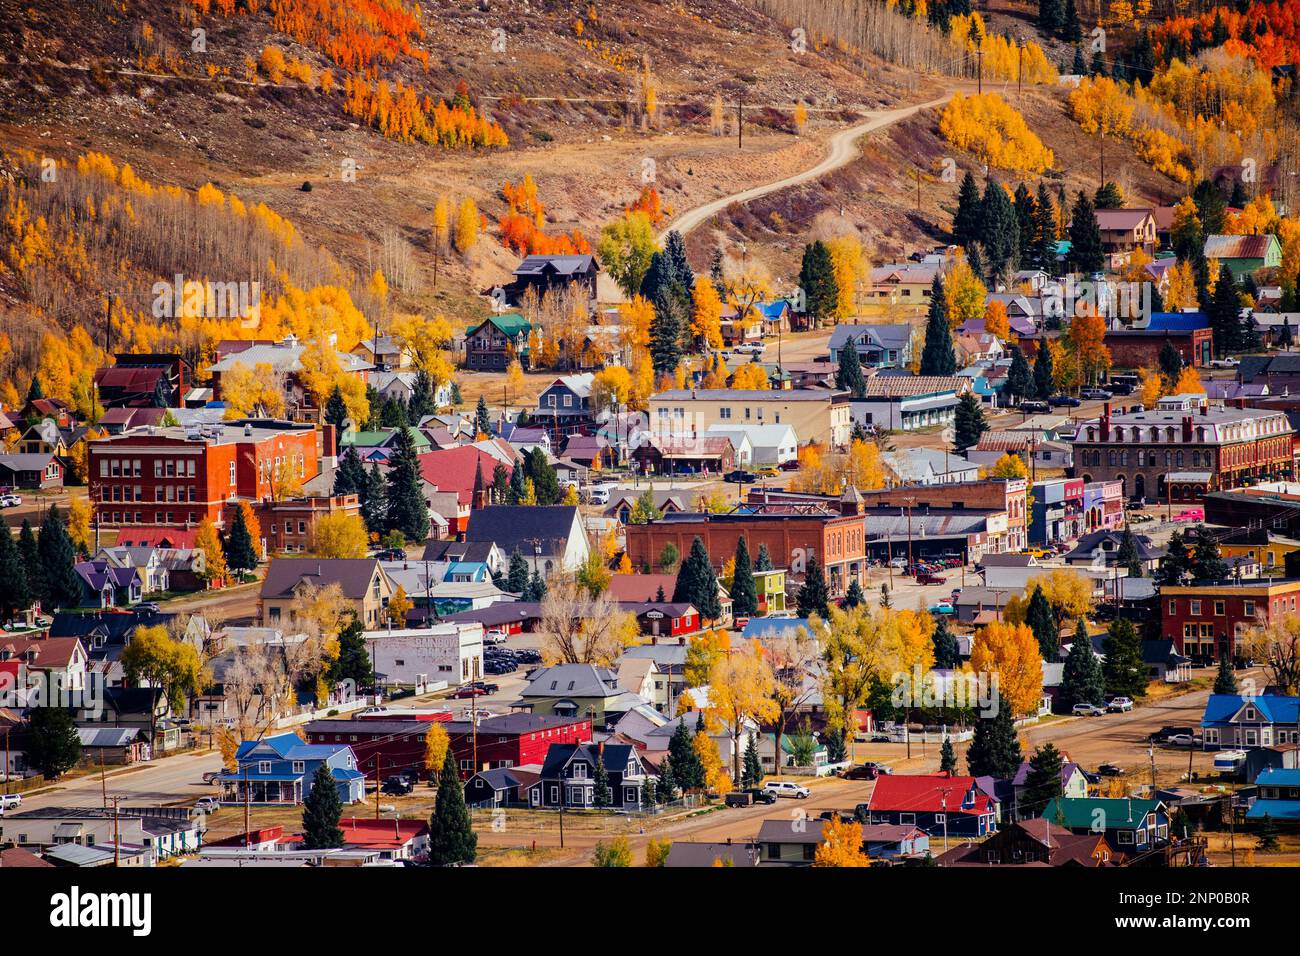 Ville aux couleurs de l'automne, Durango, Colorado, États-Unis Banque D'Images